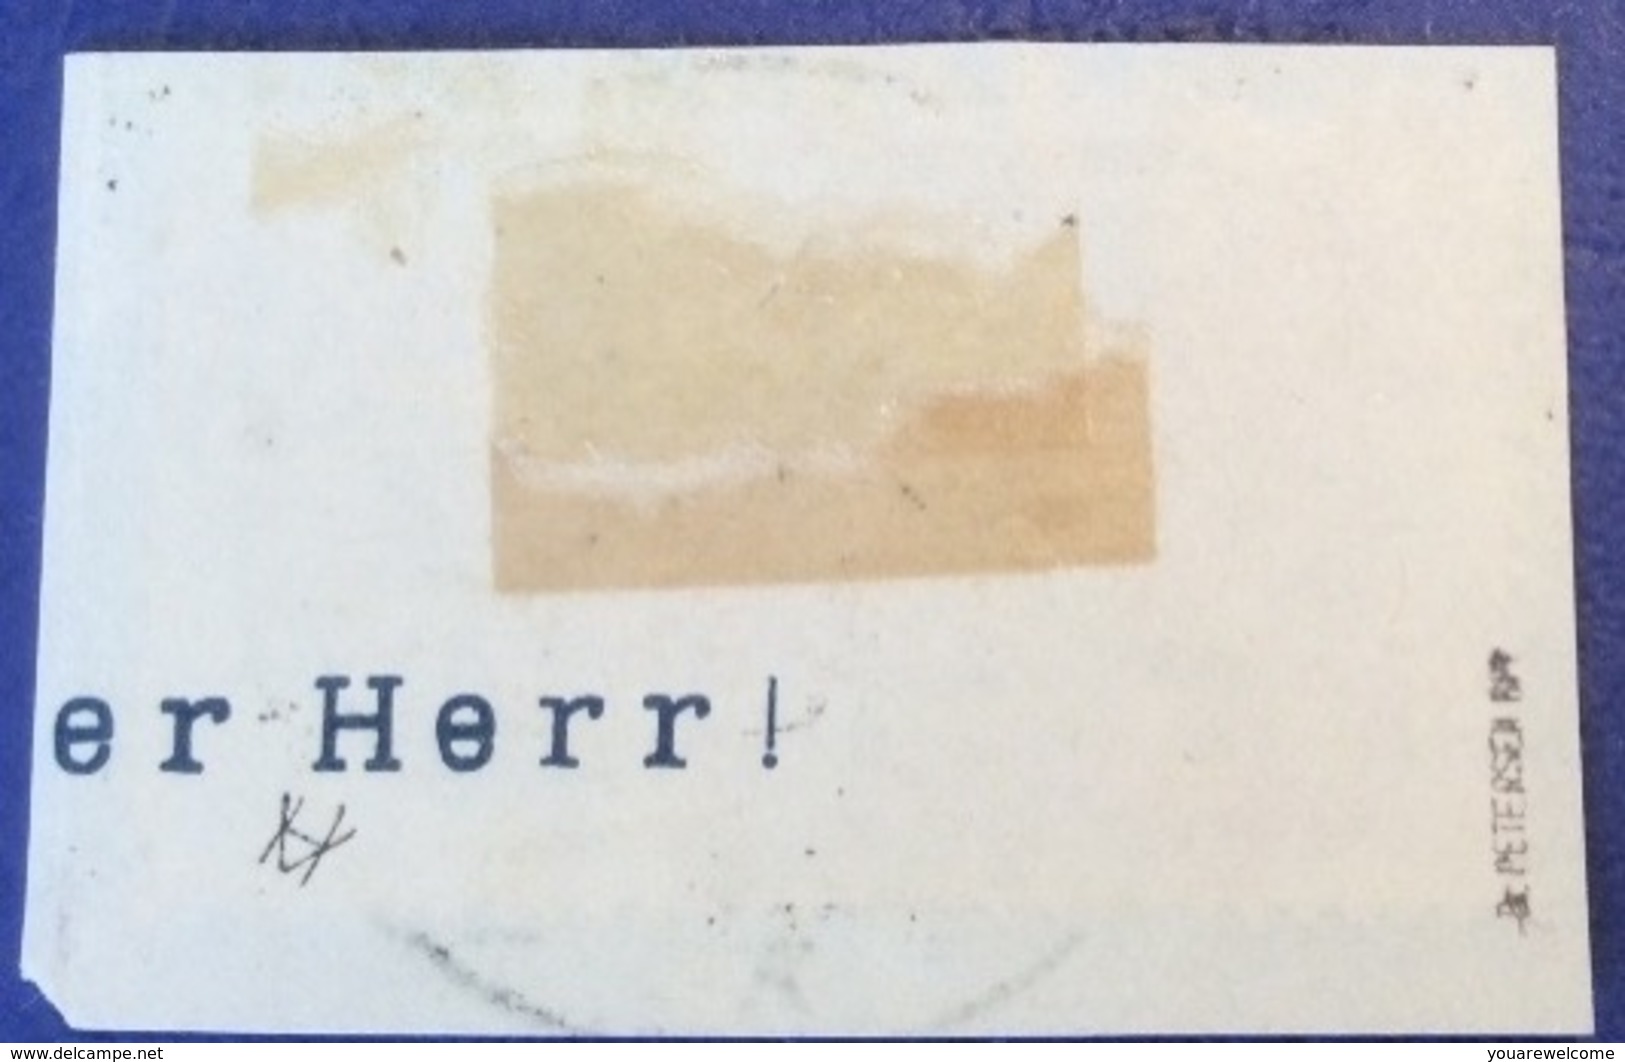 Memel Stempel SCHMALLENINNGKEN A 1923 Geprüft Dr. Petersen BPP Michel 71 Merson (Memelgebiet Lithuania) - Used Stamps